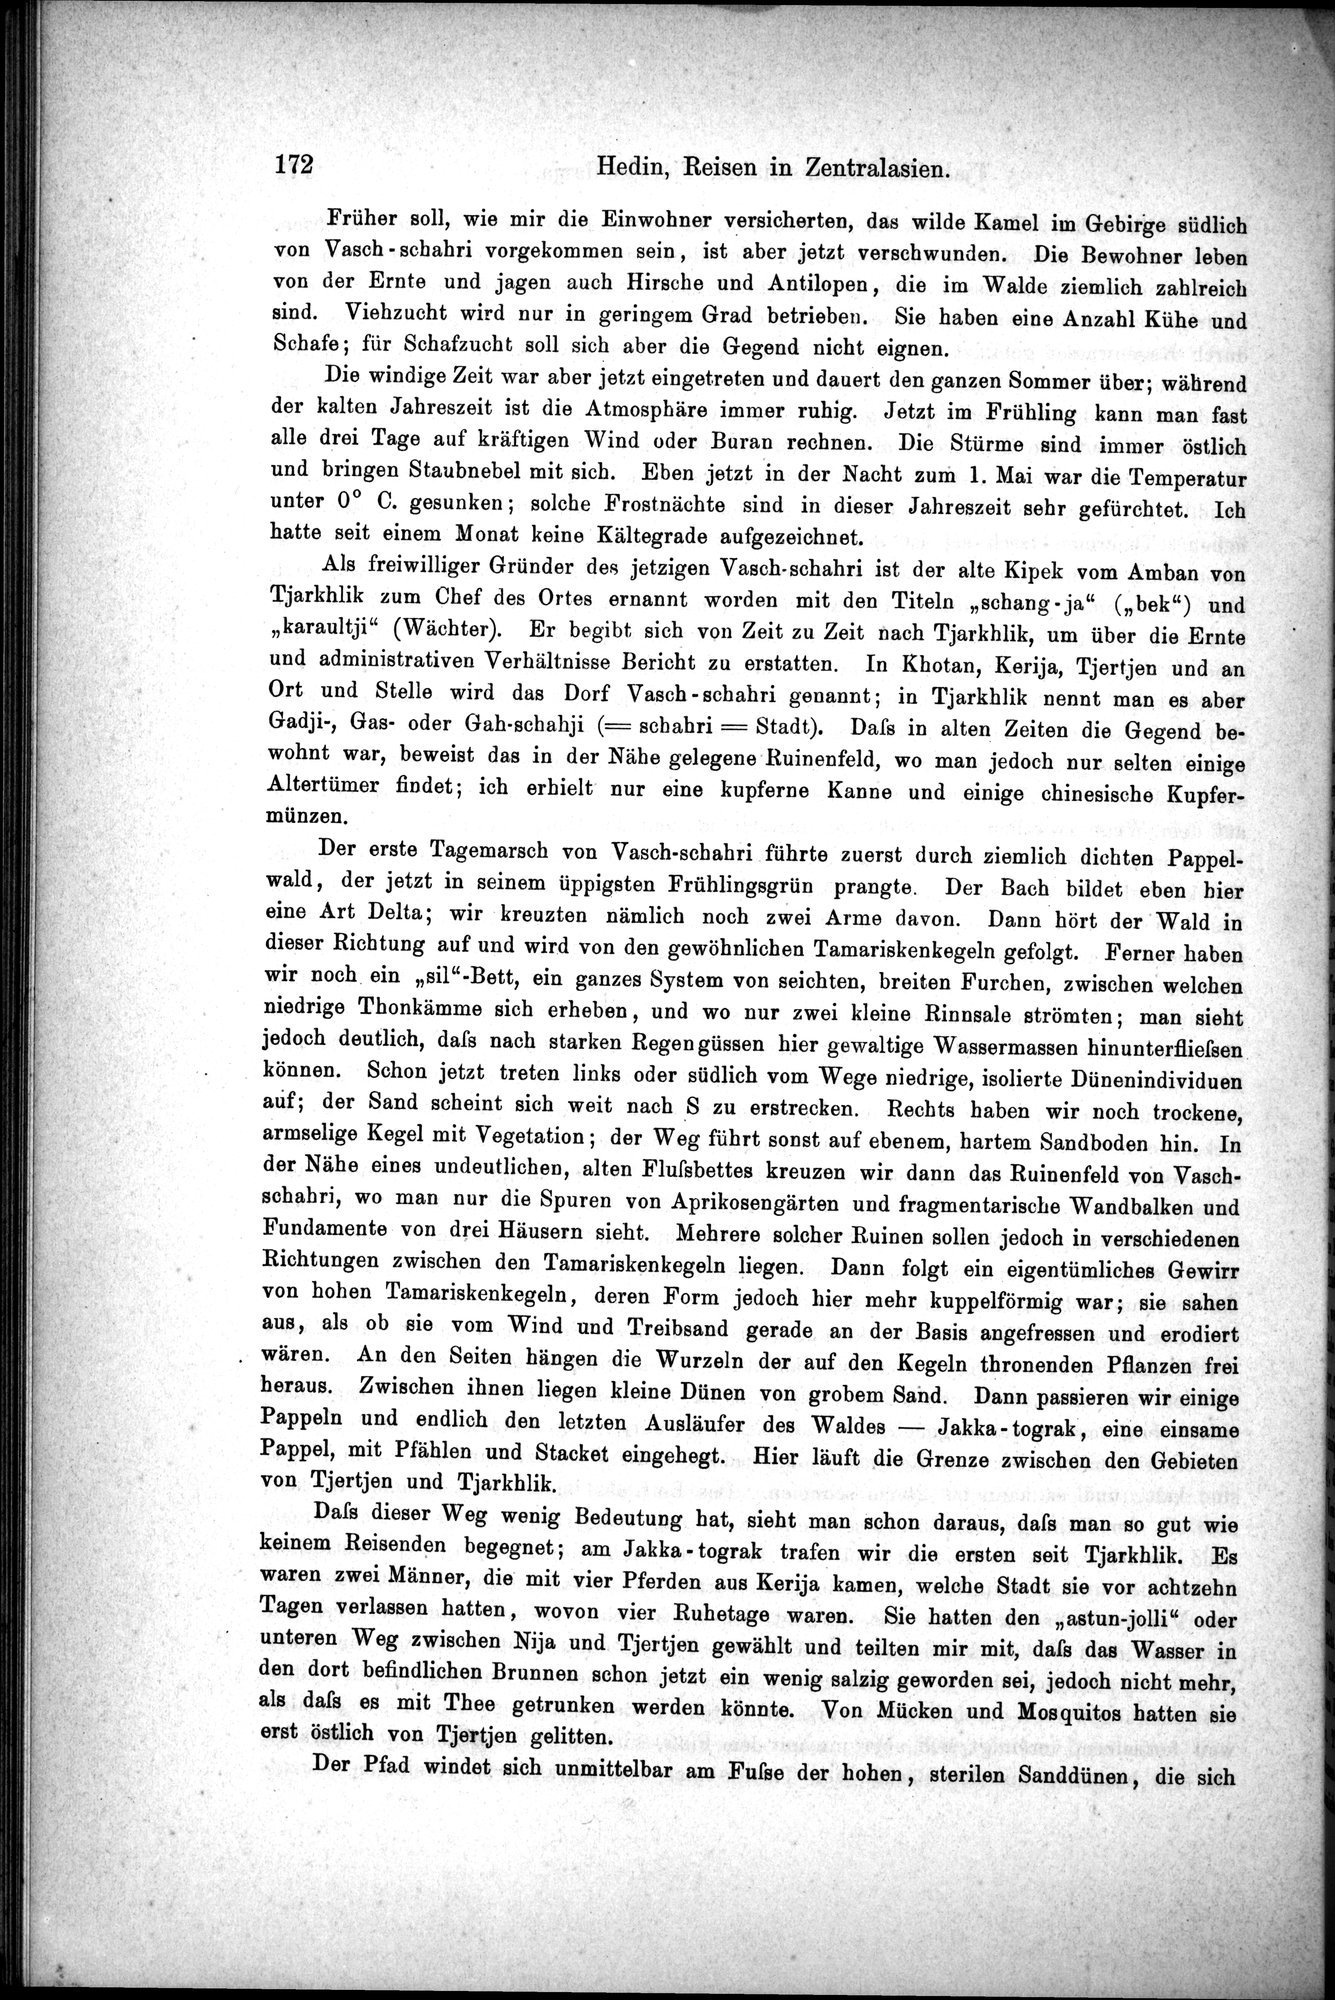 Die Geographische-Wissenschaftlichen Ergebnisse meiner Reisen in Zentralasien, 1894-1897 : vol.1 / Page 184 (Grayscale High Resolution Image)